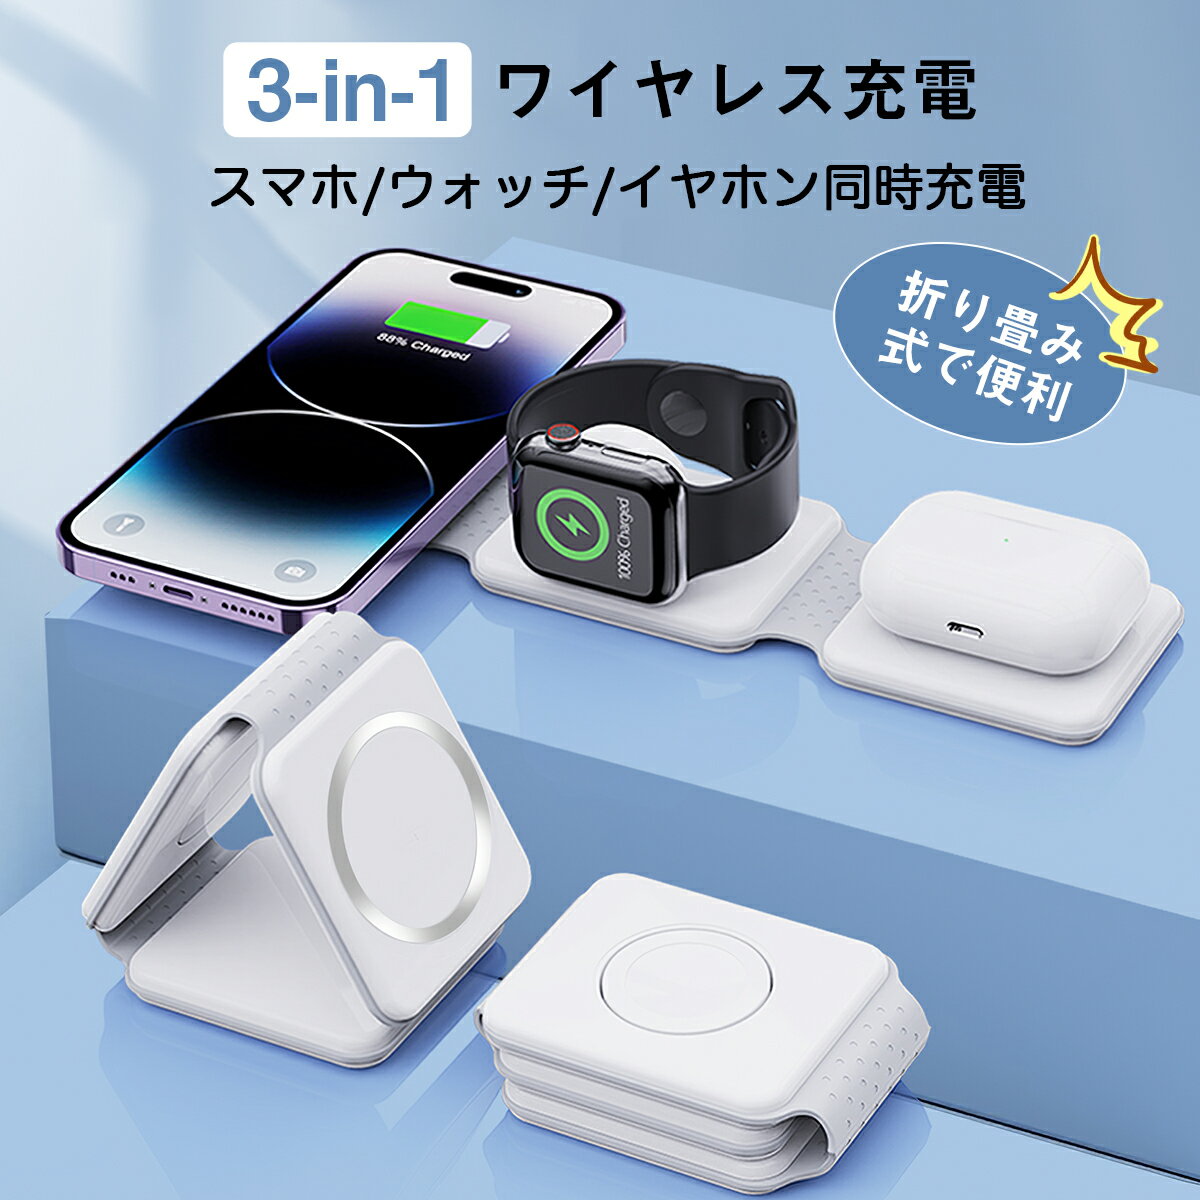 【楽天1位獲得】【68%OFF】最新型 ワイヤレス充電器 3